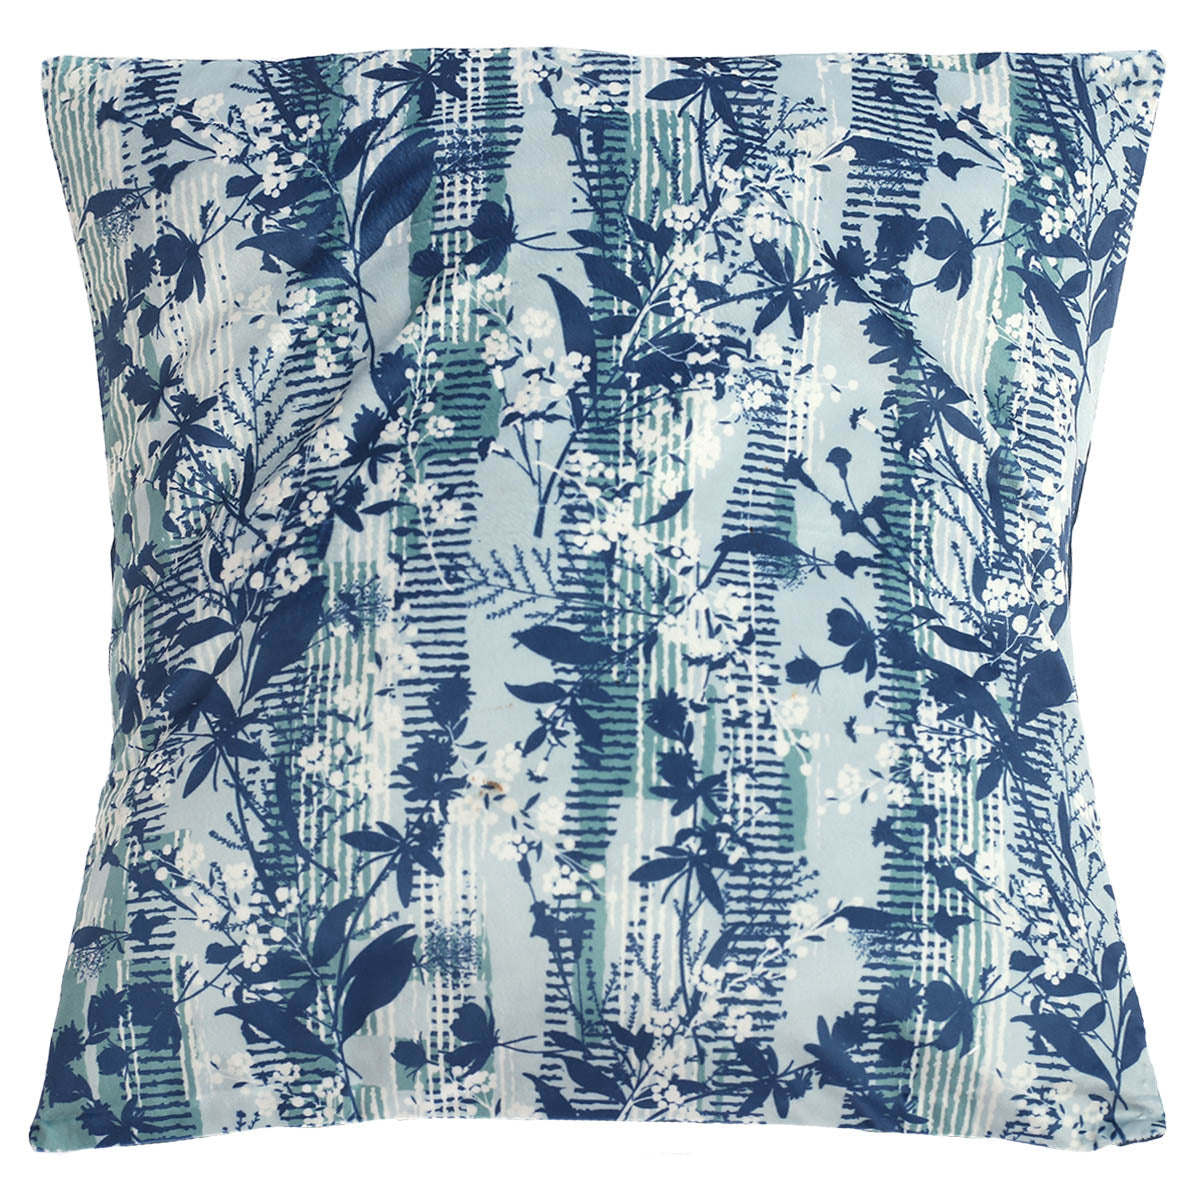 Blue Floral Cushion Cover 18x18"